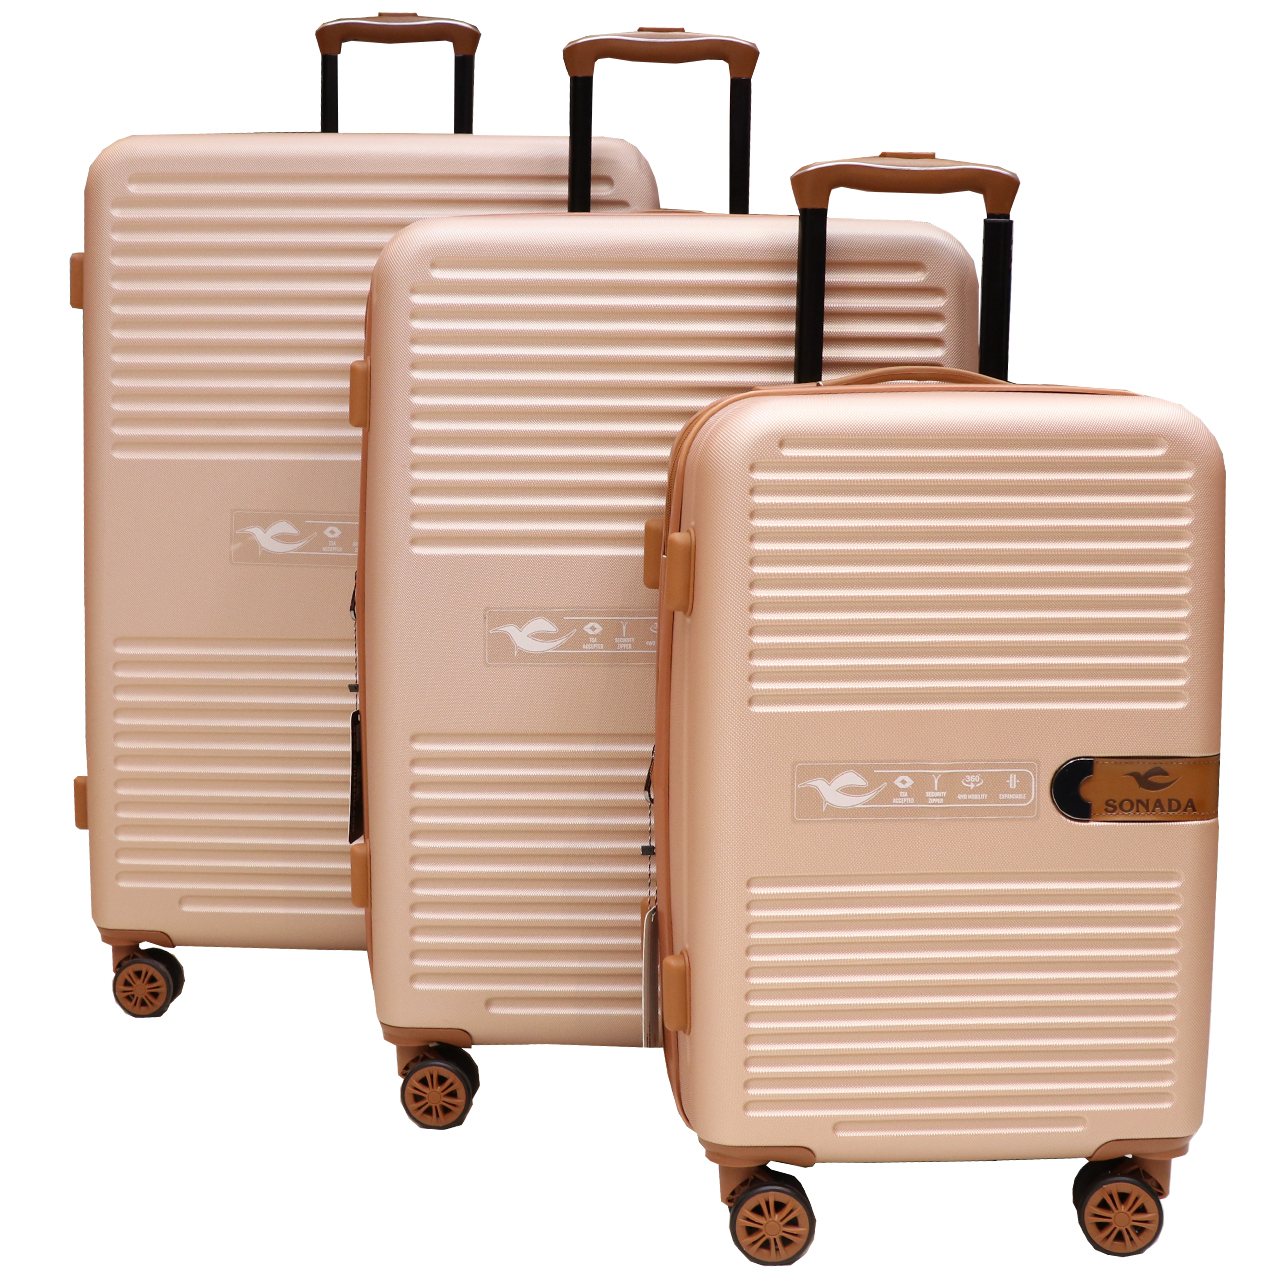 نکته خرید - قیمت روز مجموعه سه عددی چمدان سونادا پلی کربنات مدل 755 sonada خرید